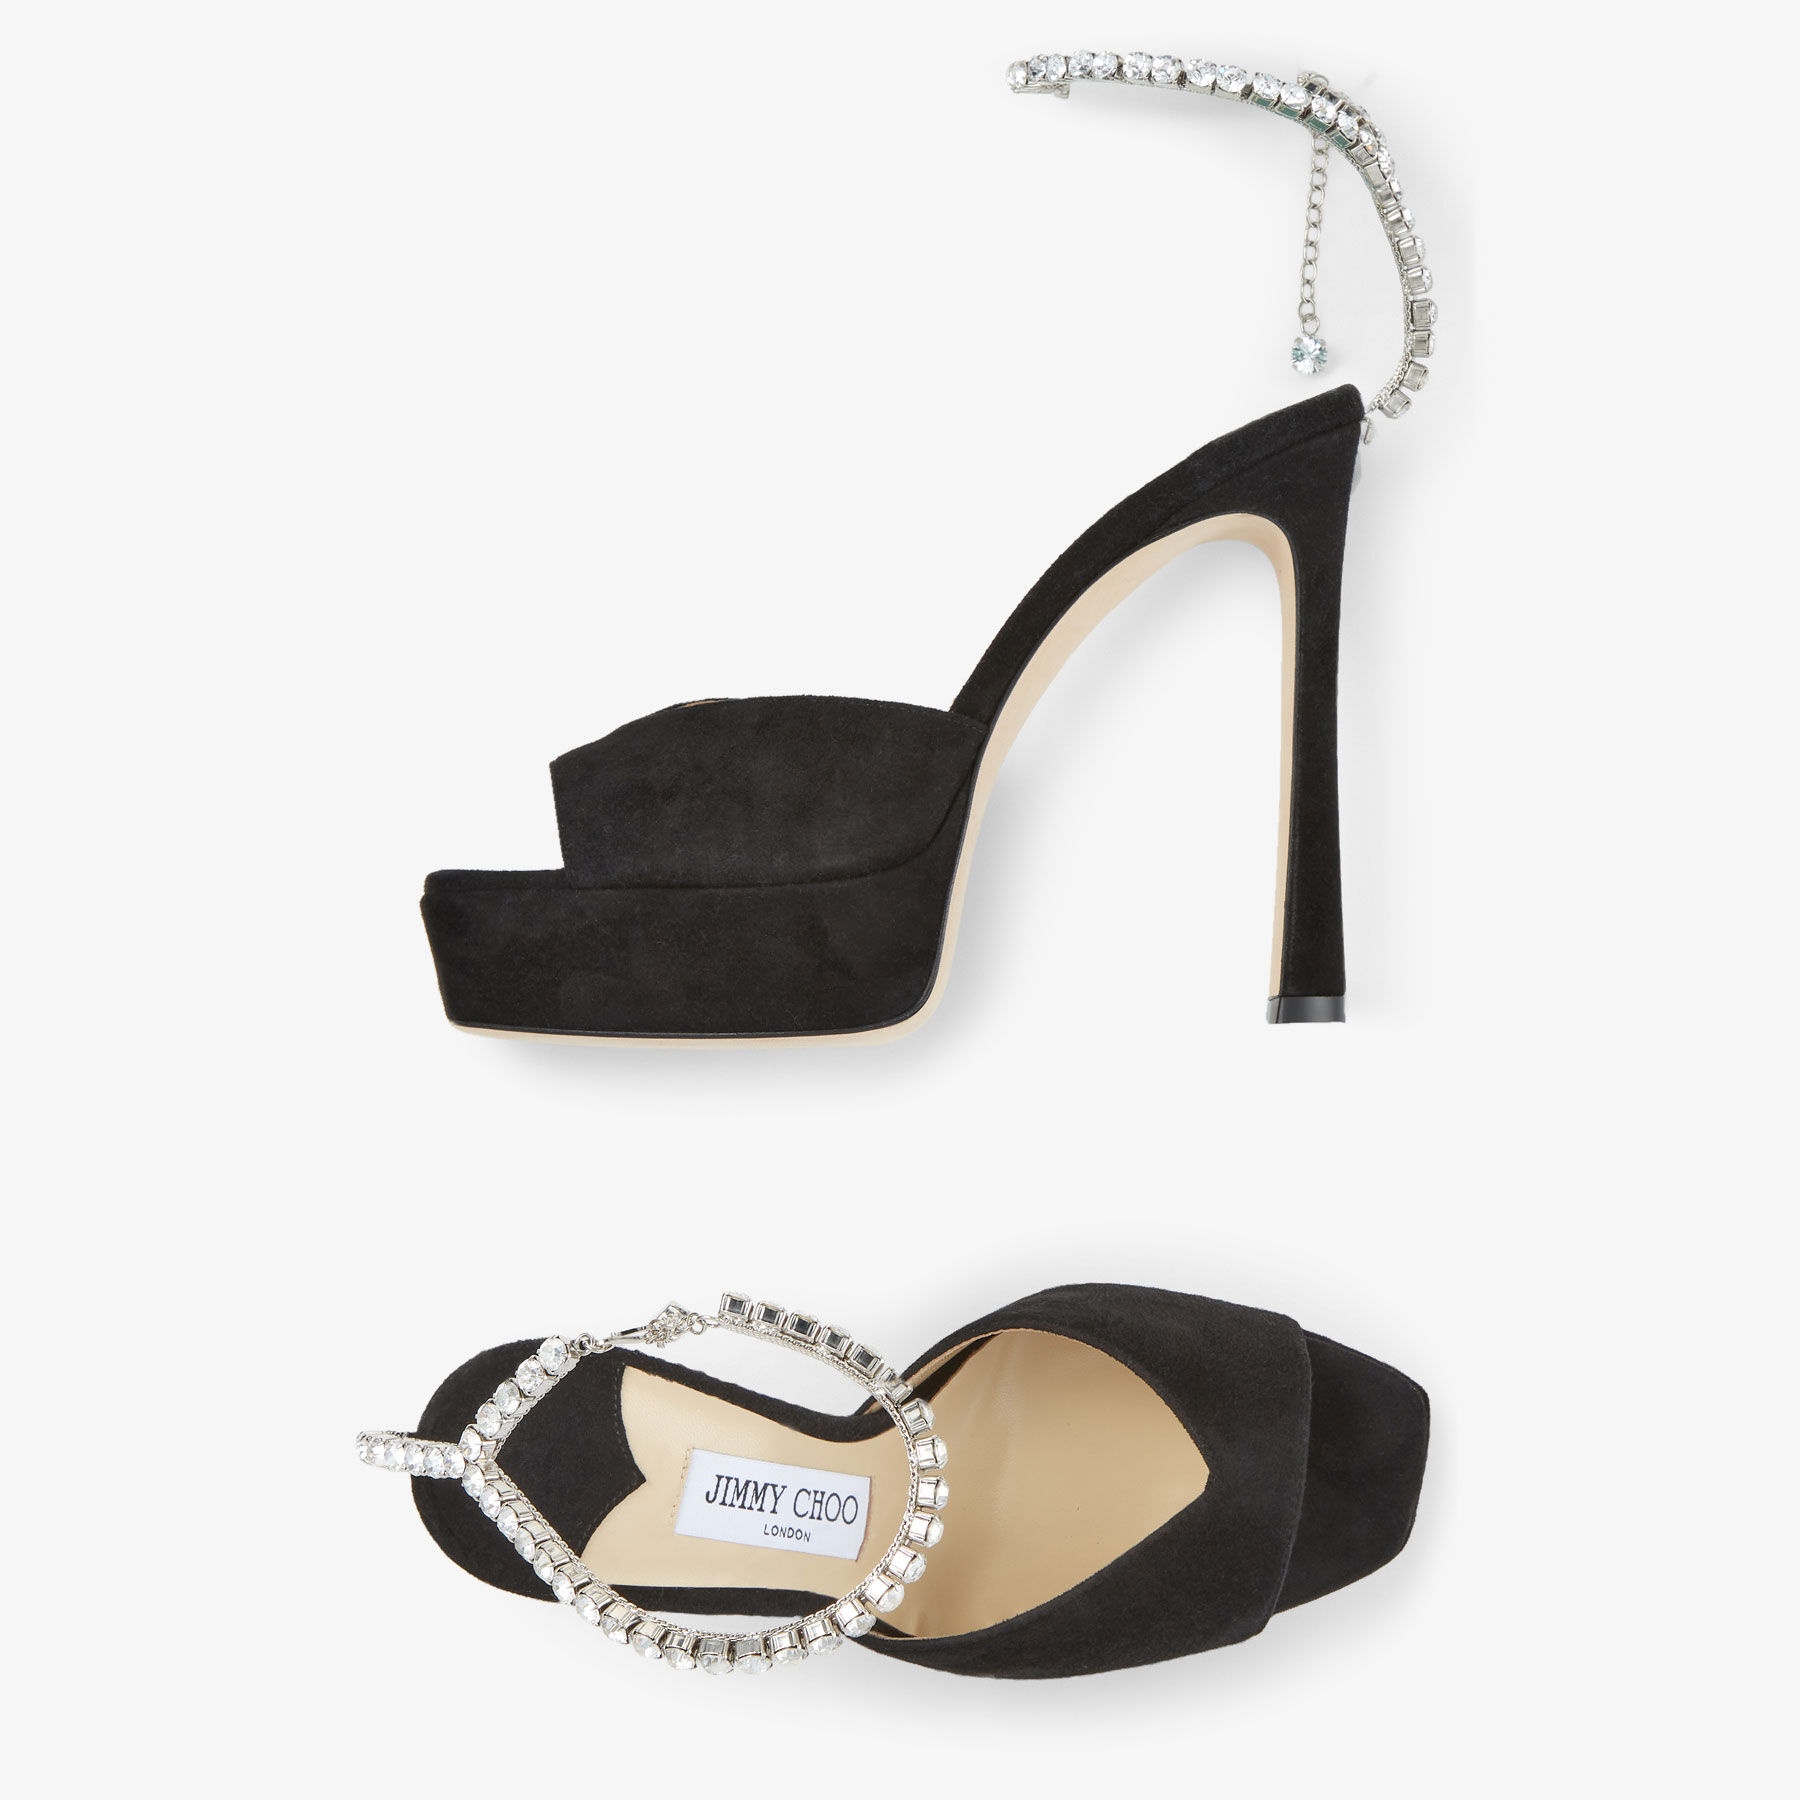 Saeda Sandal/PF 125
Black Suede Platform Sandals with Crystal Embellishment - 4